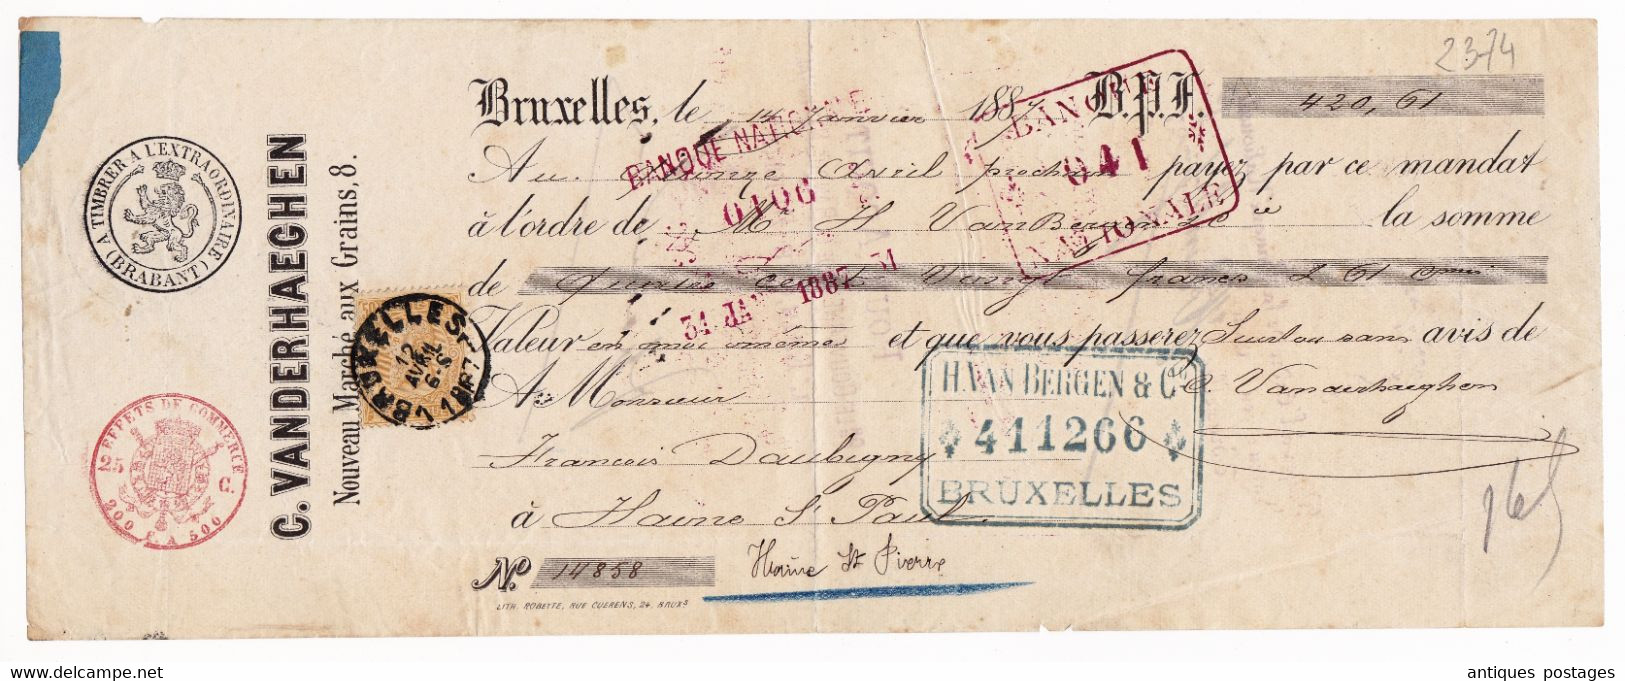 Quittance Banque 1887 Vanderhaeghen Nouveau Marché Aux Grains Bruxelles Belgique Banque Nationale - 1884-1891 Leopold II